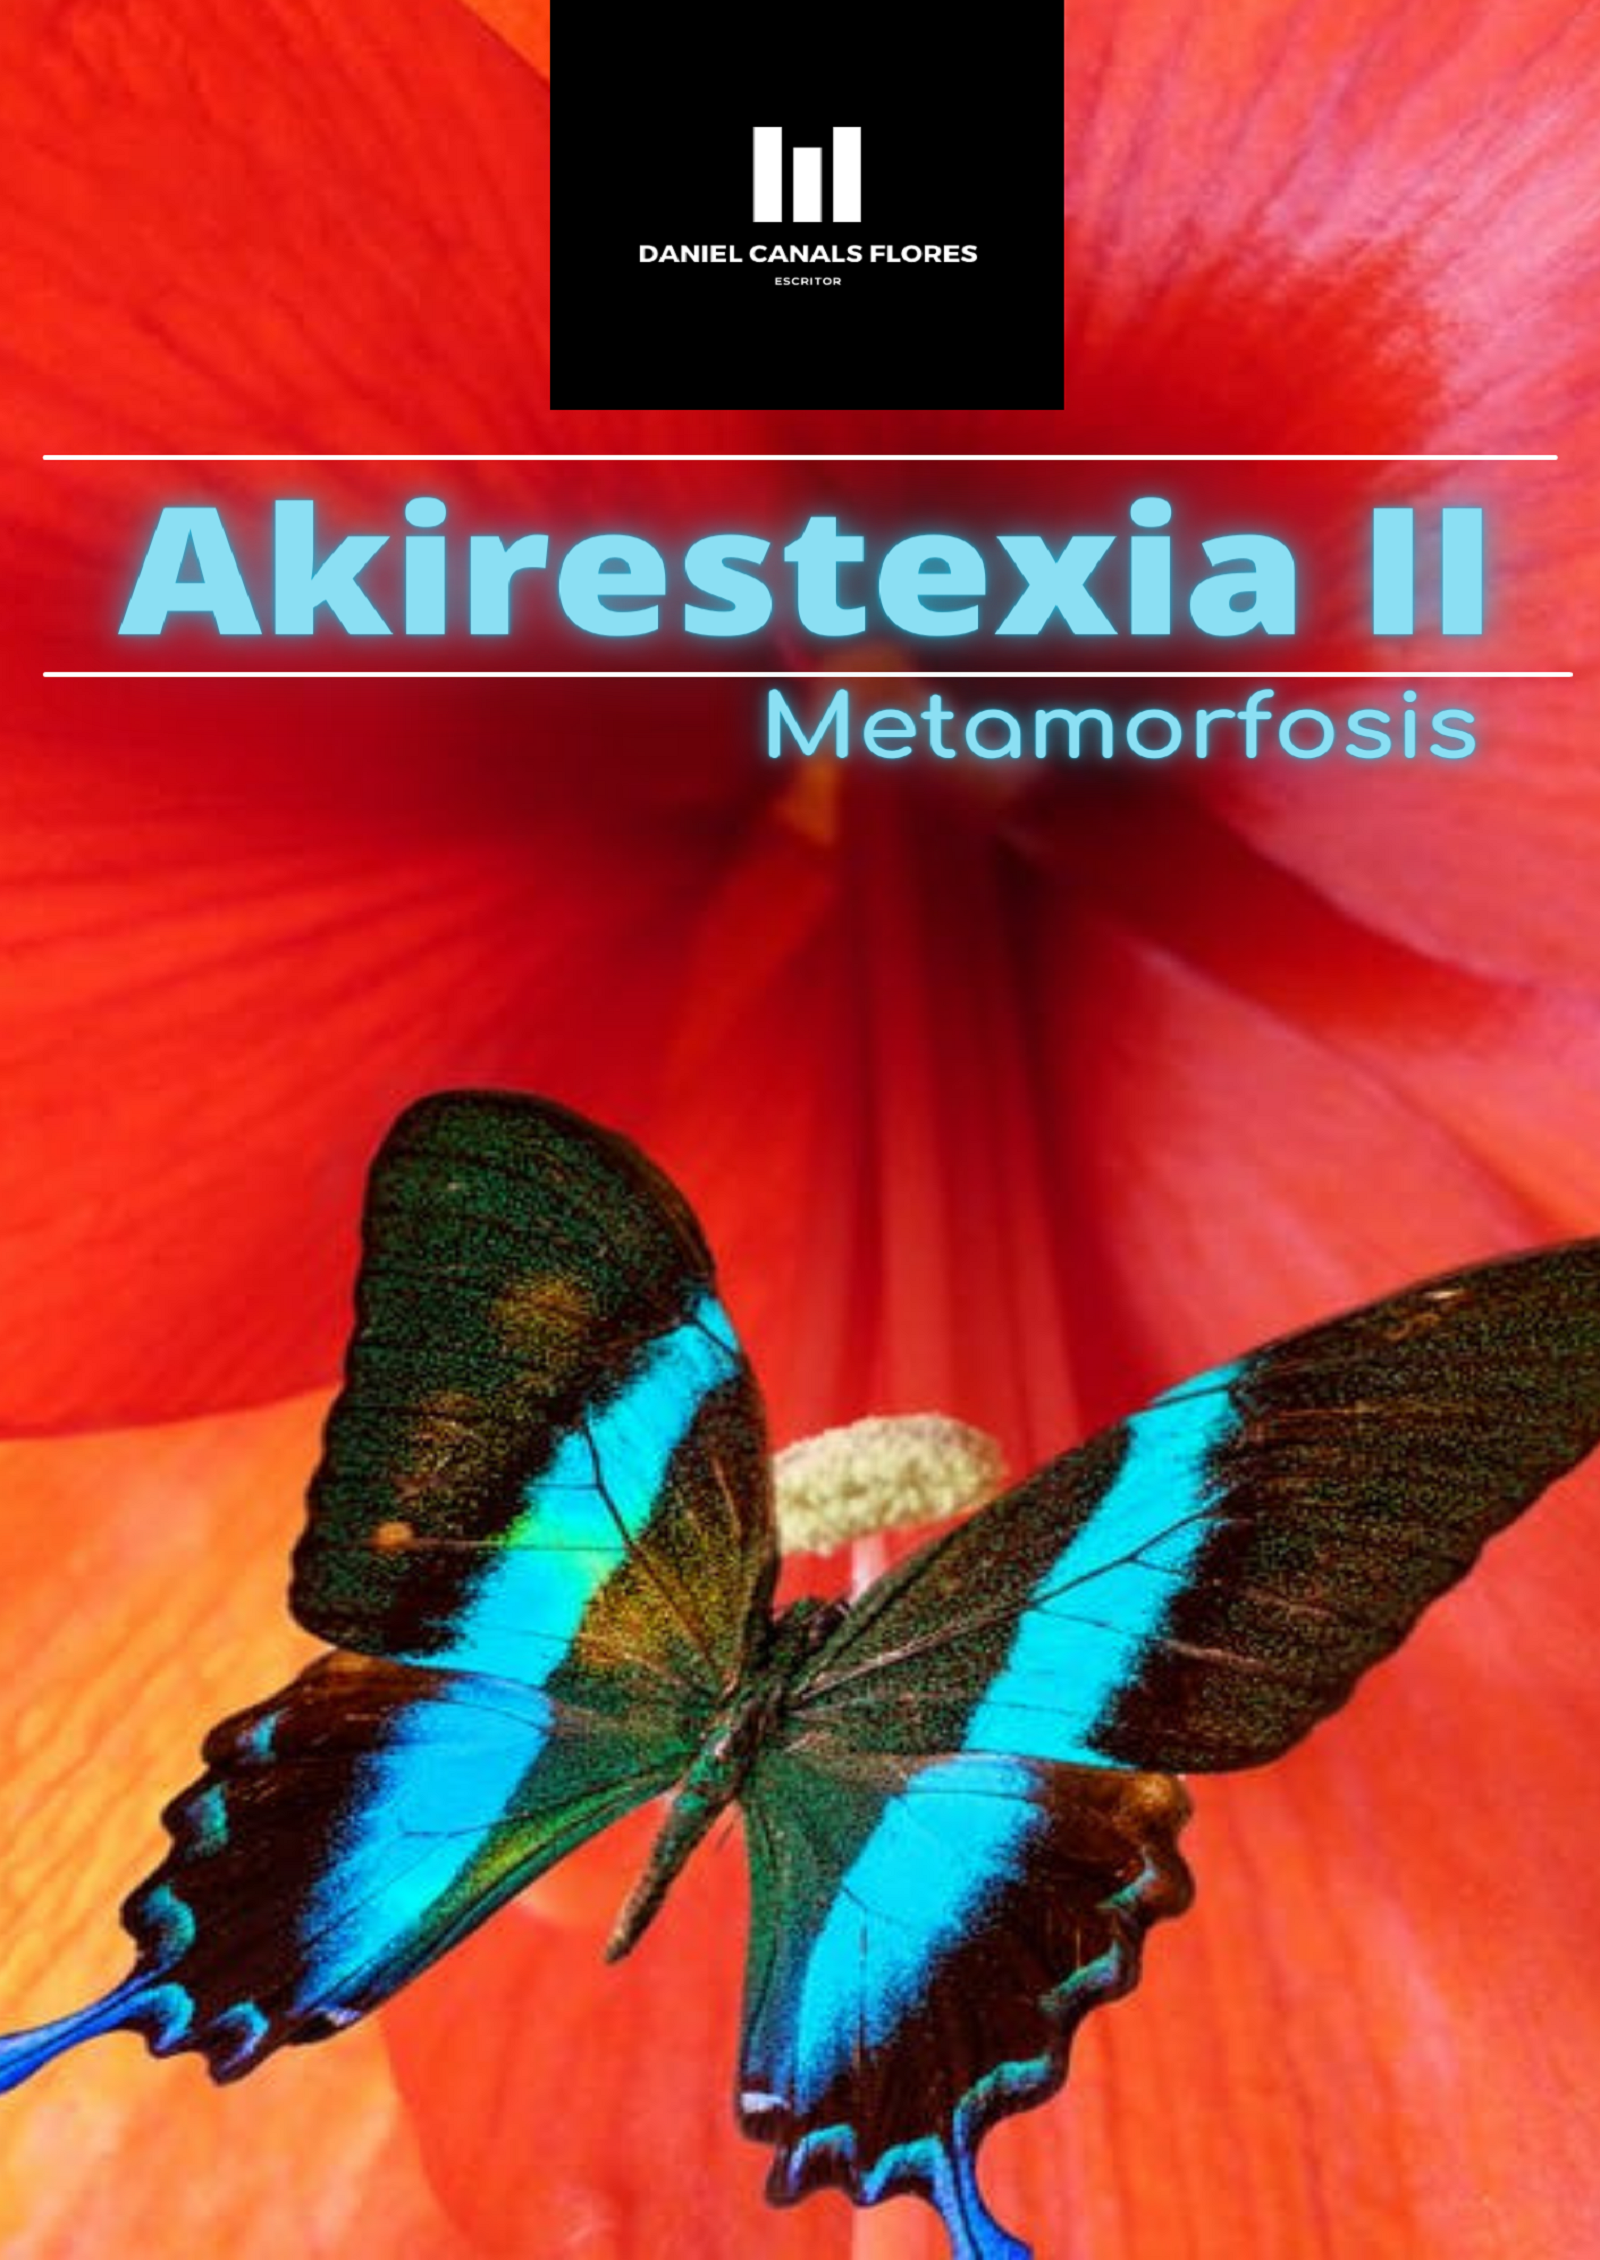 AKIRESTEXIA II Metamorfosis